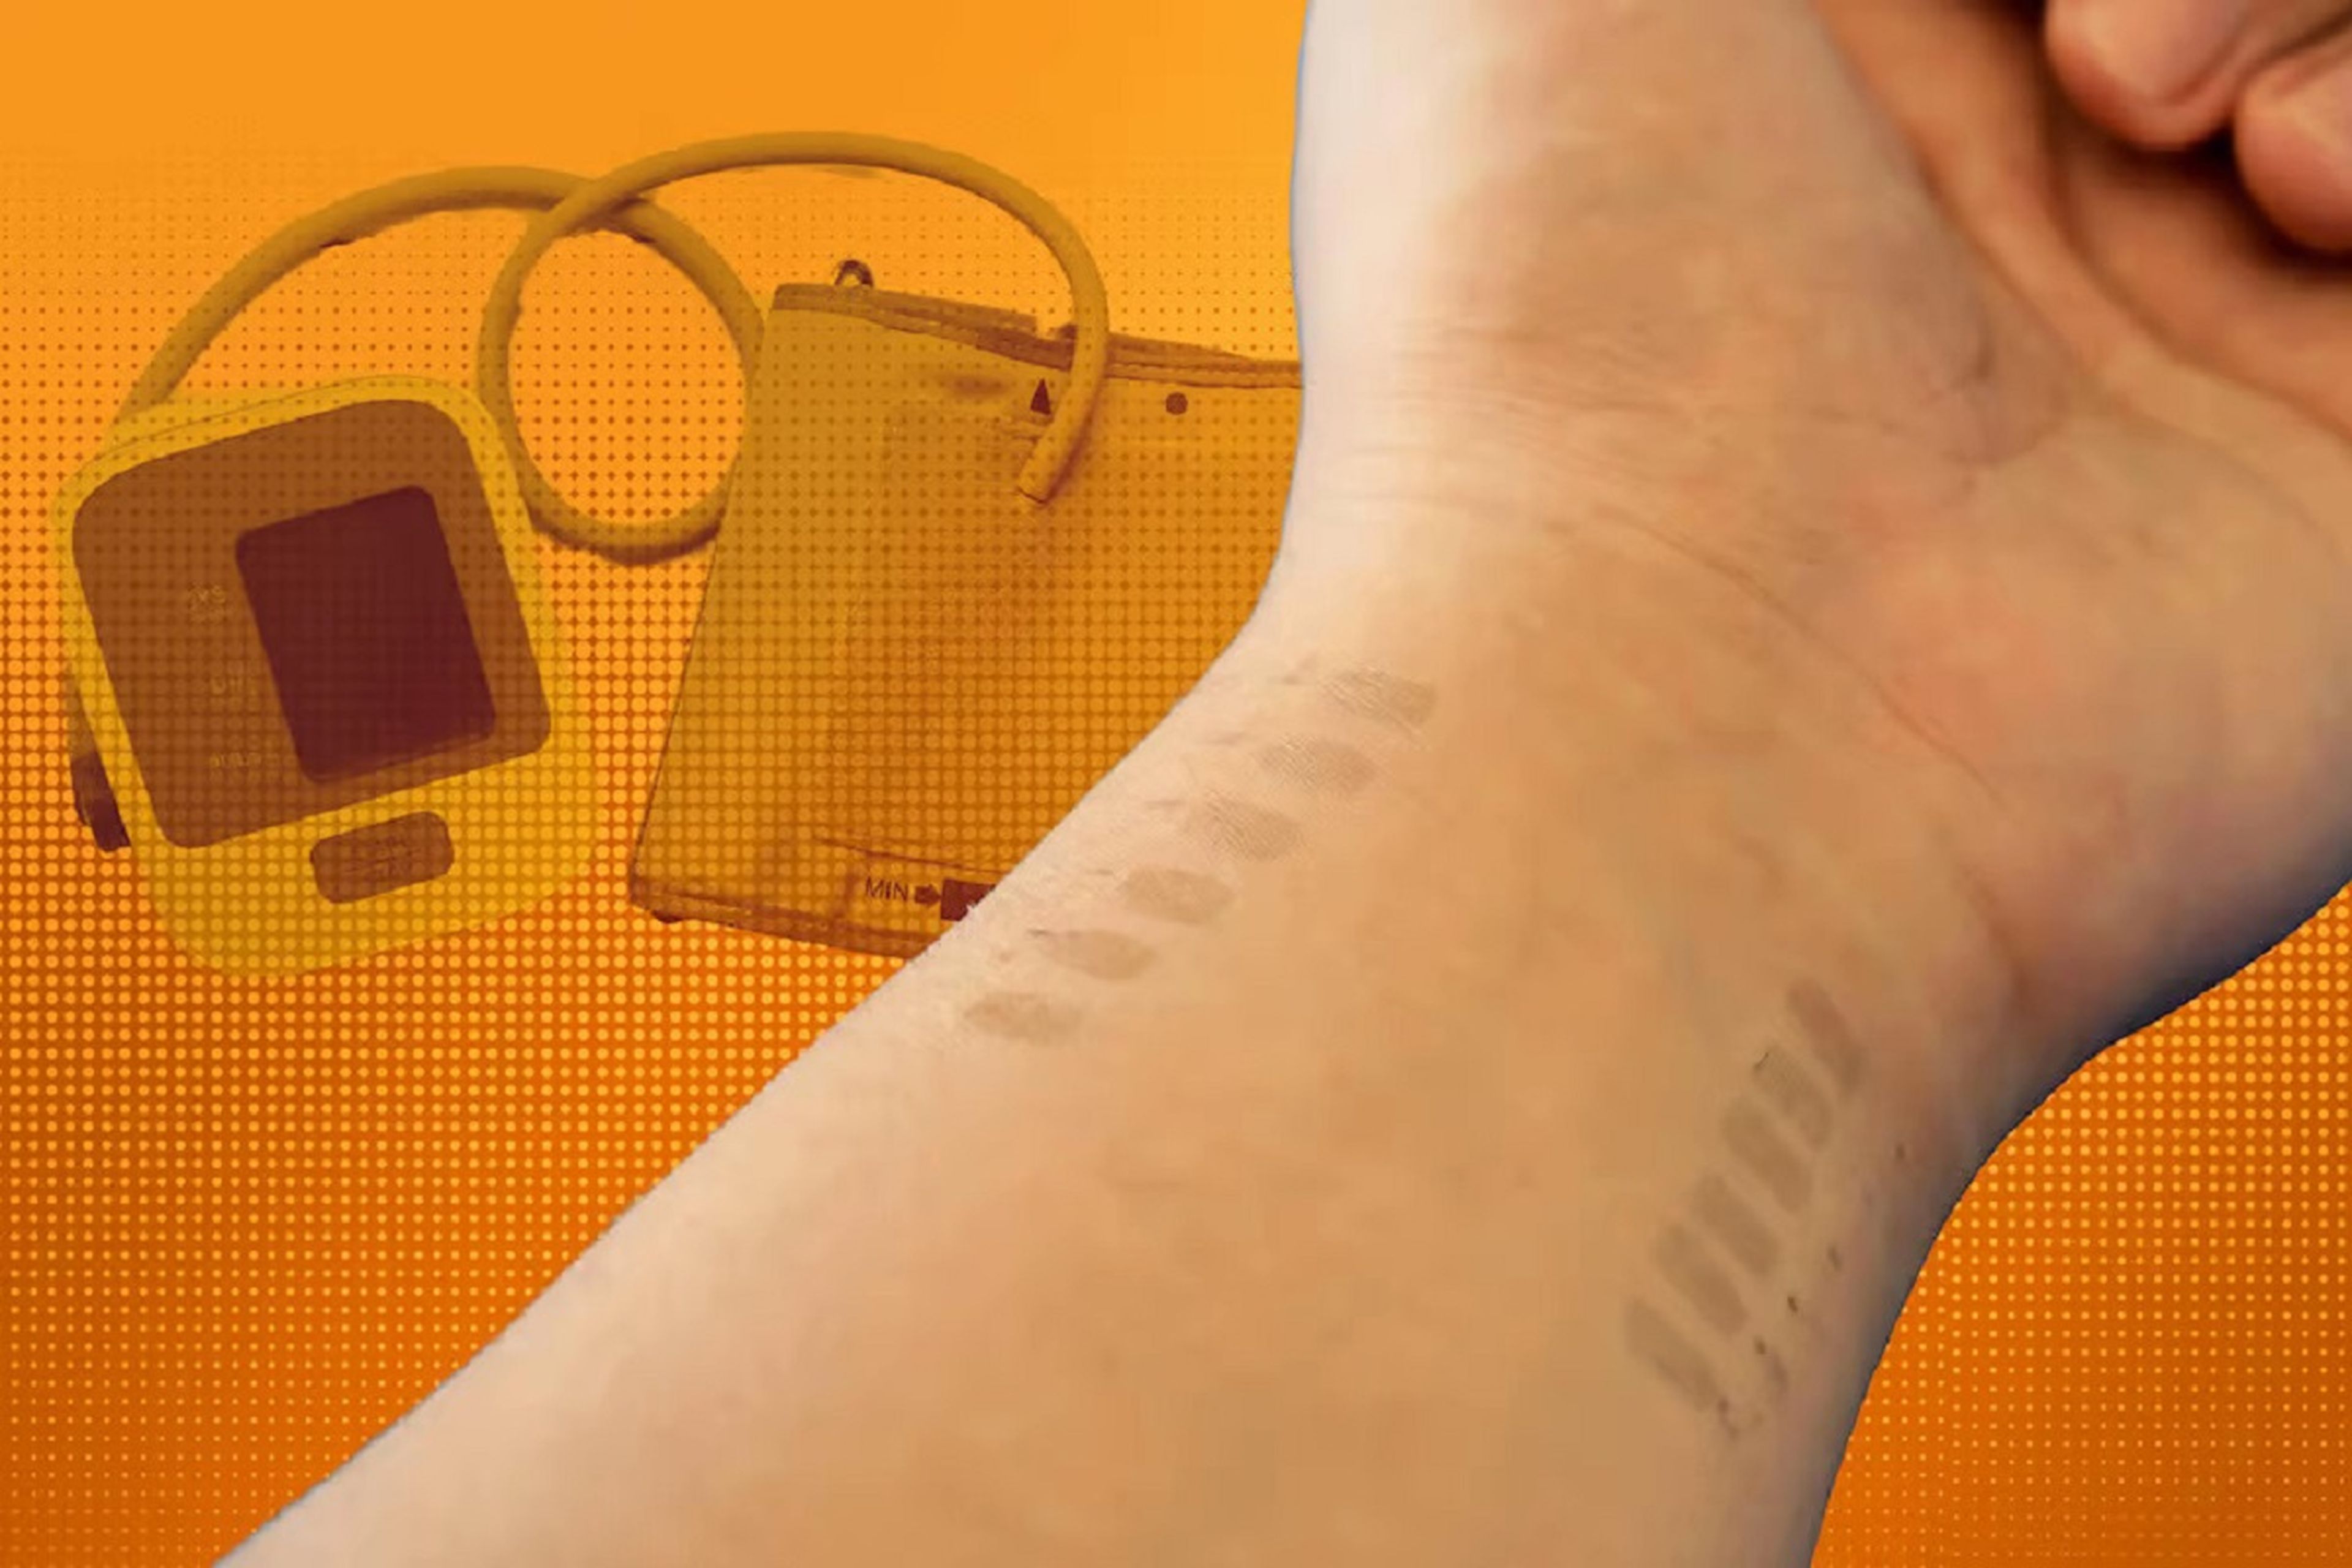 Científicos desarrollan un nuevo "tatuaje" electrónico que puede controlar la presión arterial